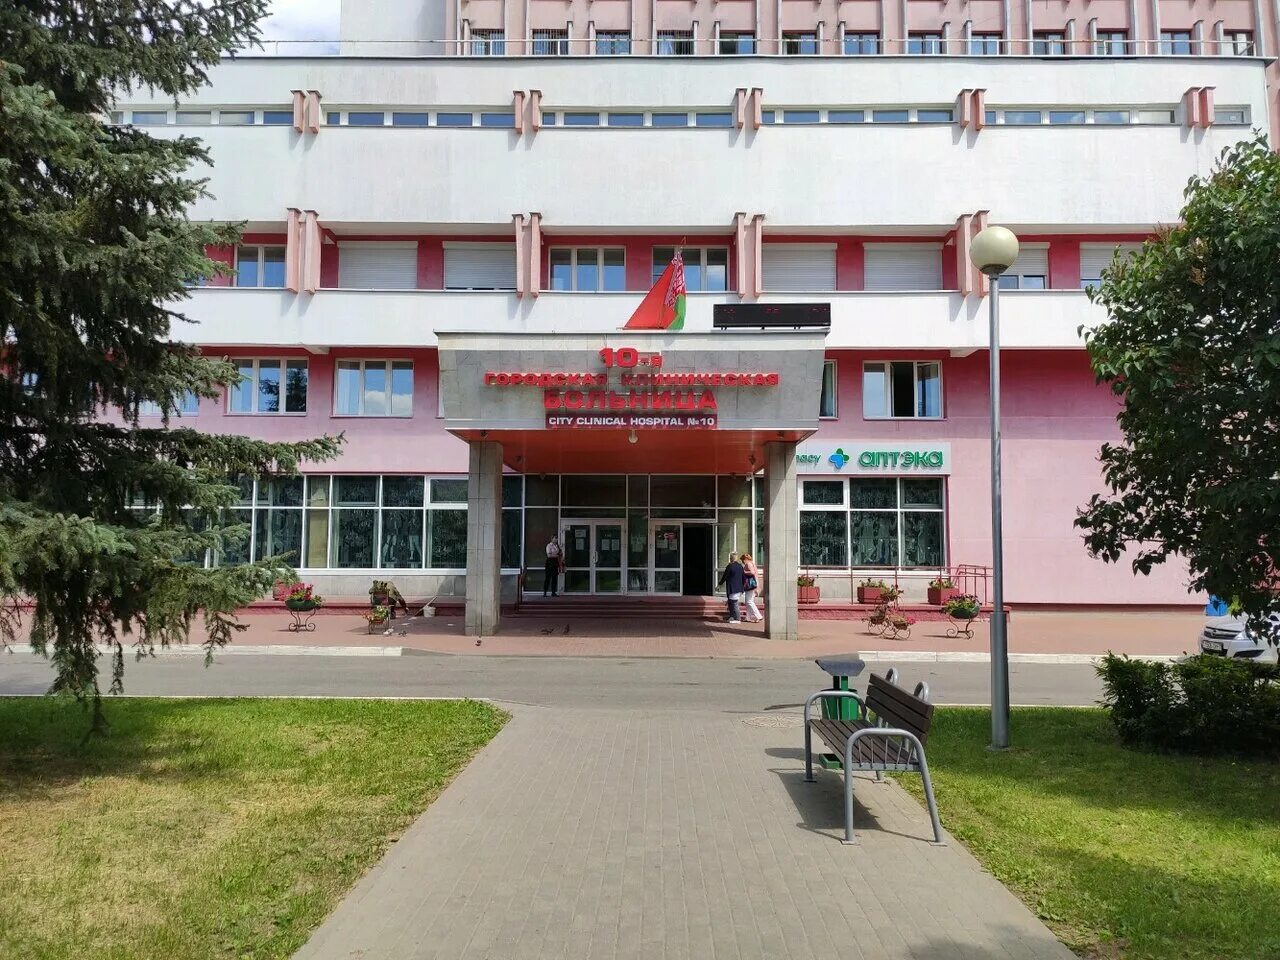 10 больница минск отделения